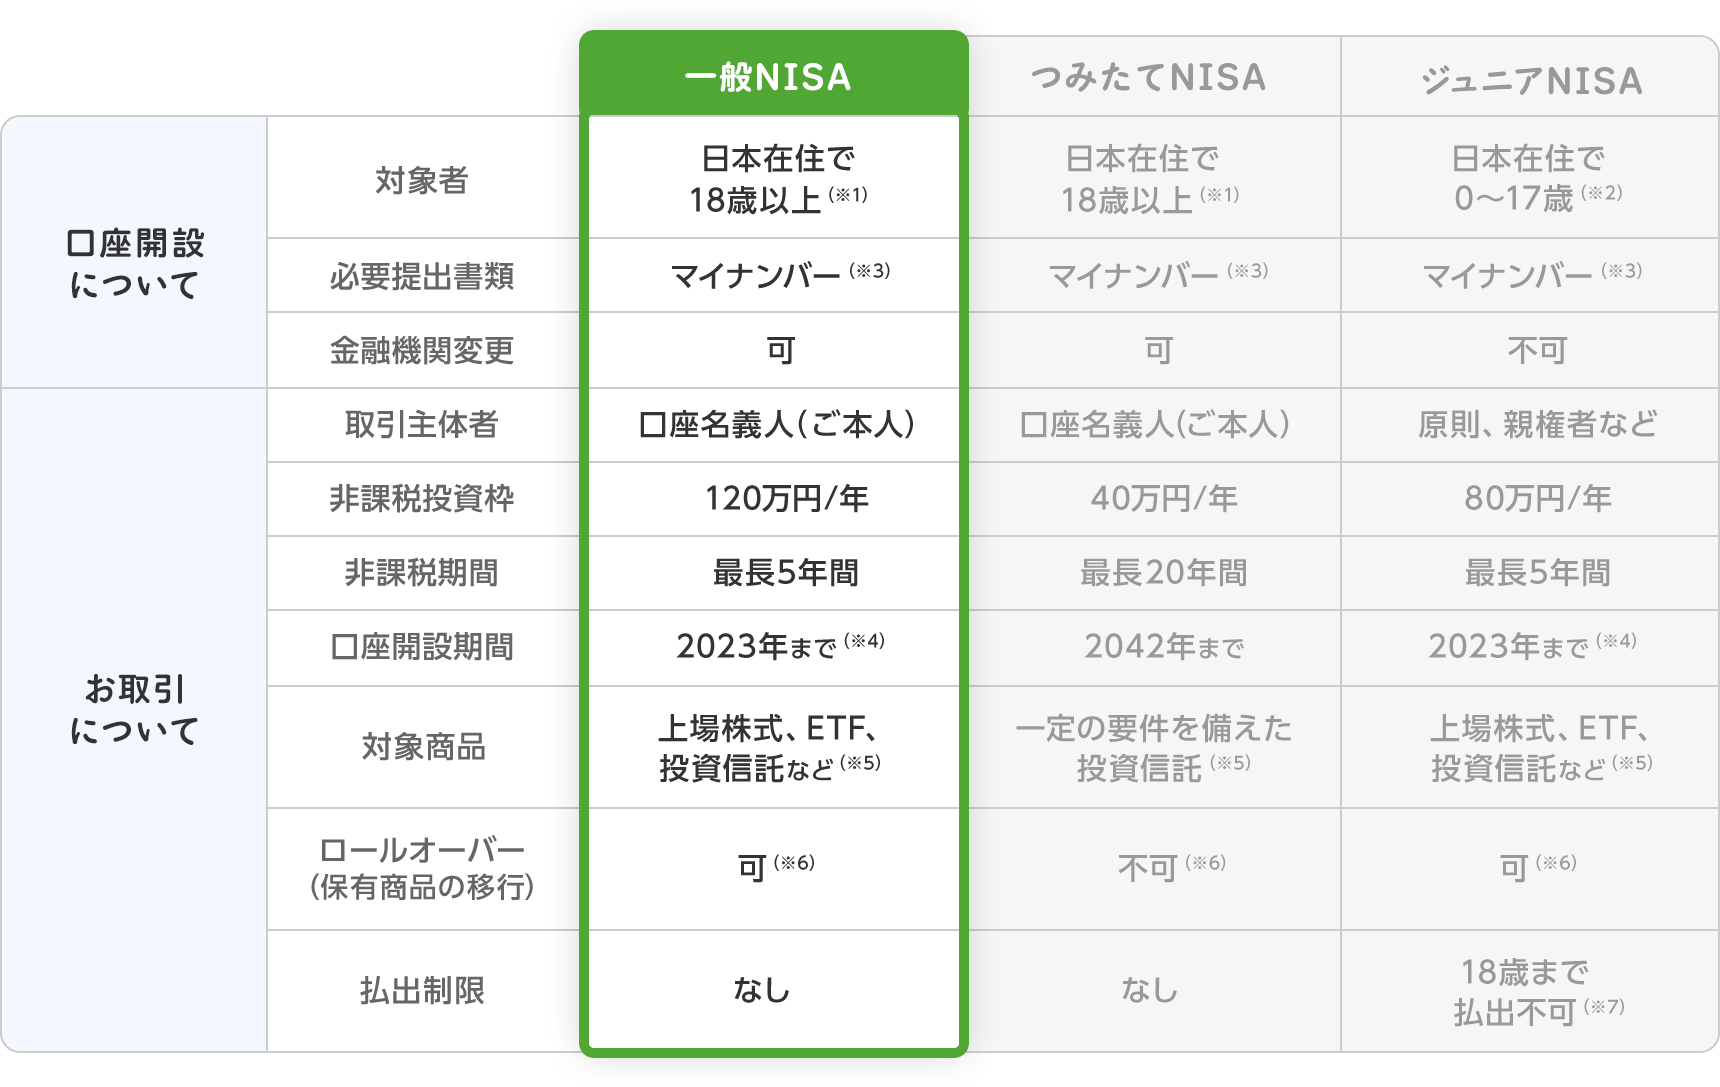 一般NISA・つみたてNISA・ジュニアNISAのの比較表(口座開設について/お取引について)